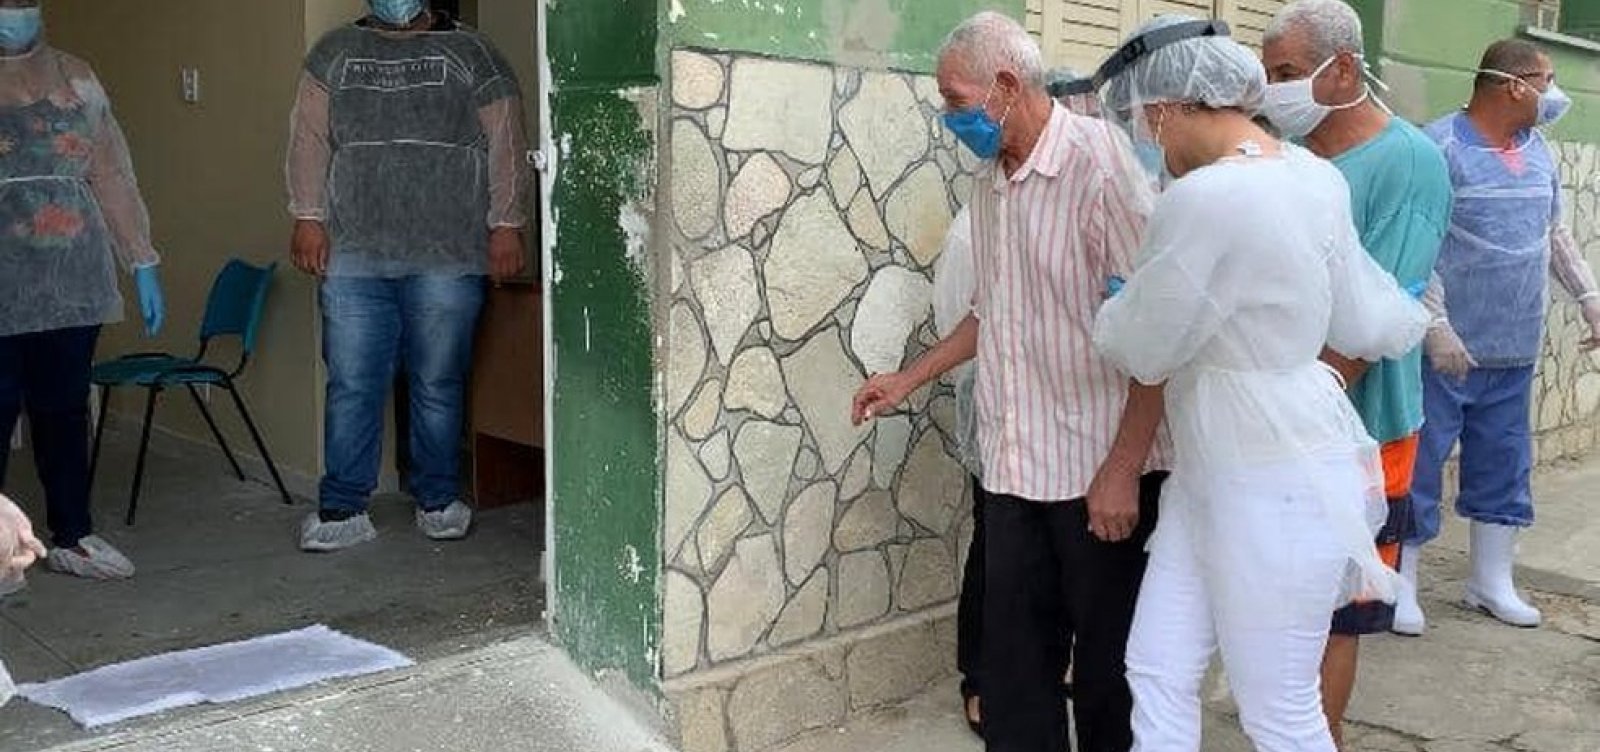 Ipiaú: Após surto de Covid-19 em asilo, 53 idosos têm alta 